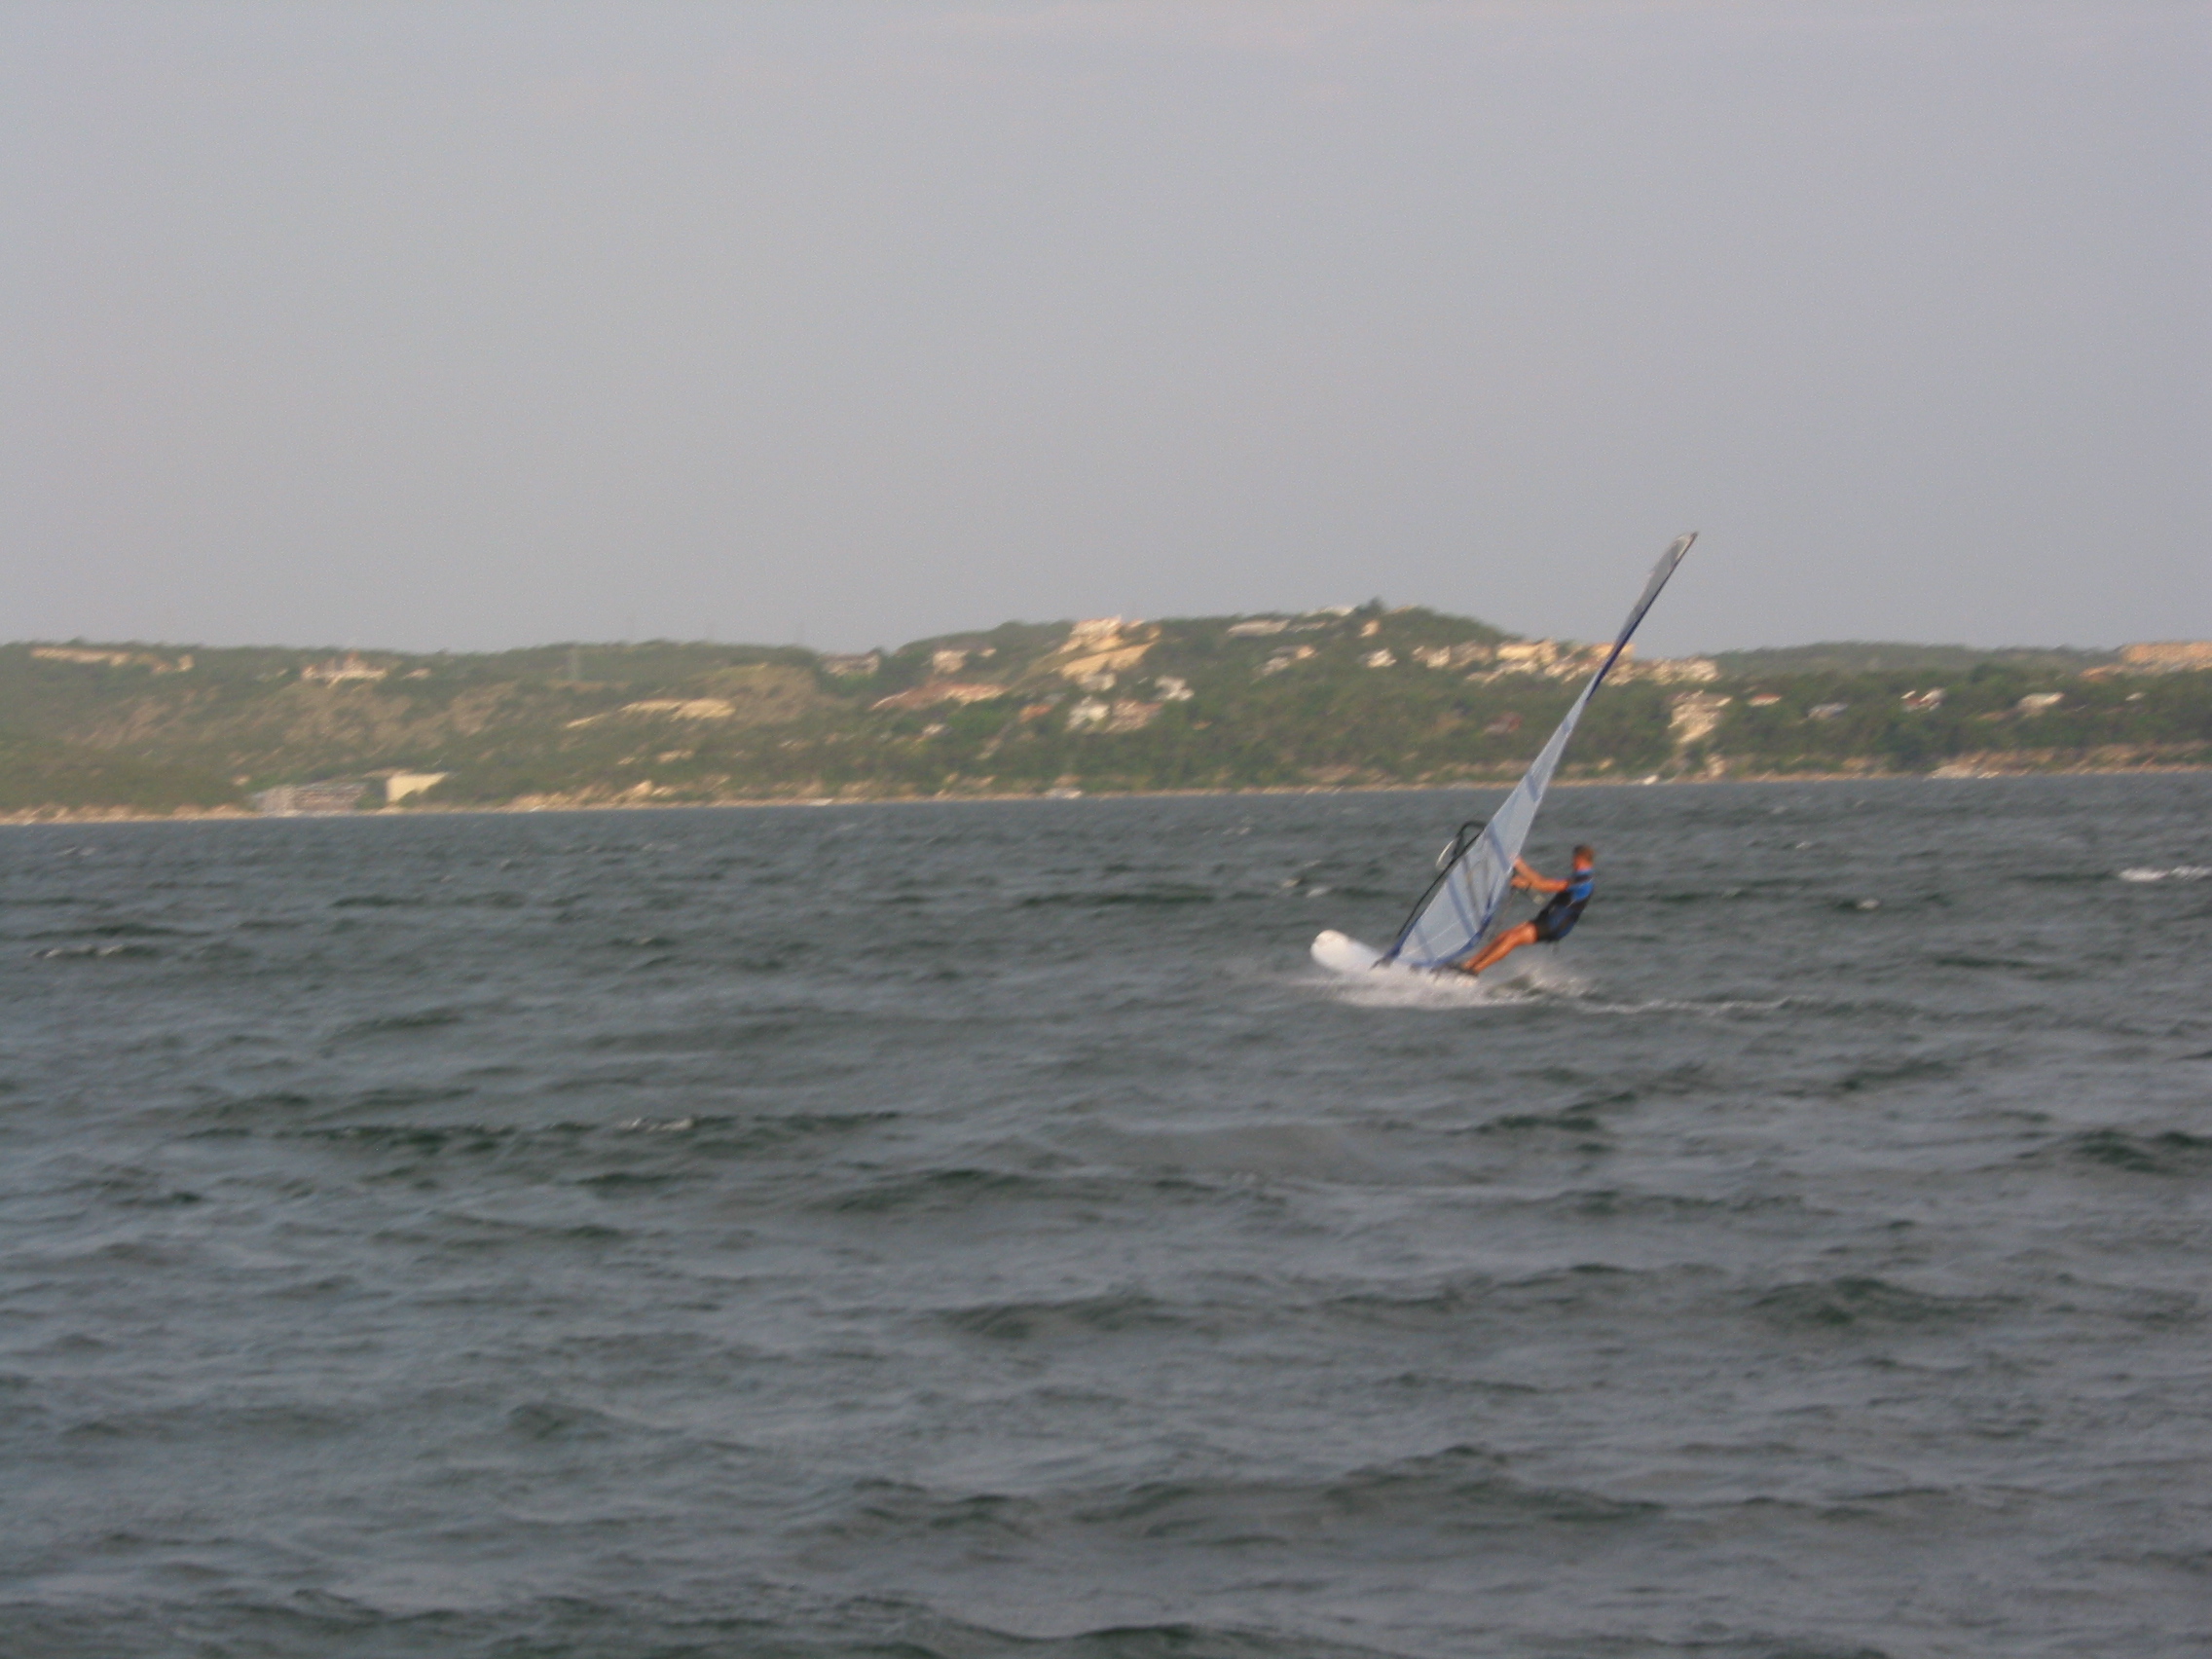 same windsurfer, after tacking back